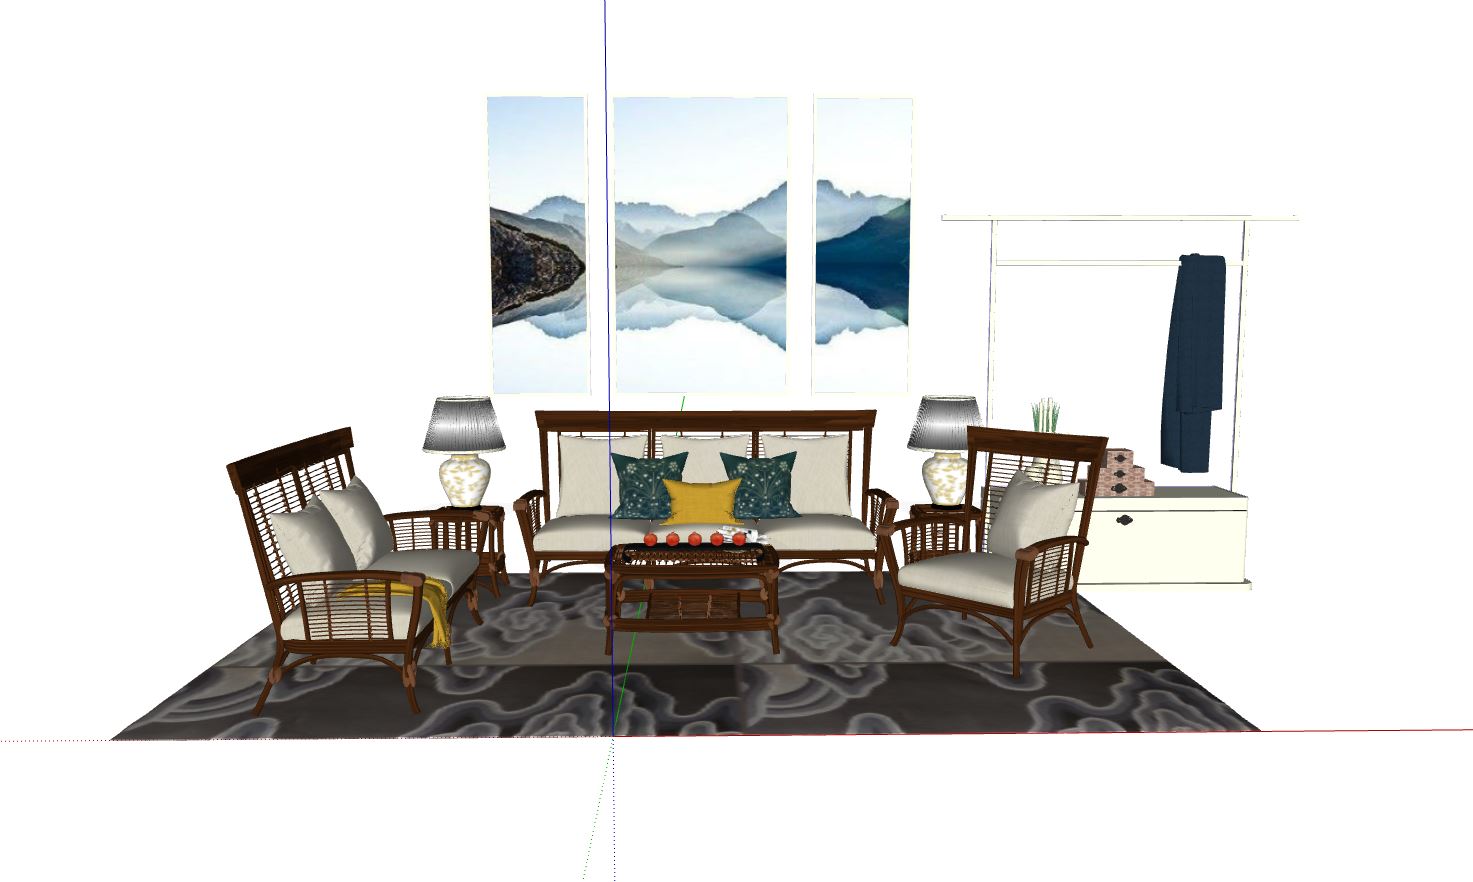 nội thất phòng khách,sketchup phòng khách,mẫu 3d nội thất phòng khách,phối cảnh nội thất phòng khách